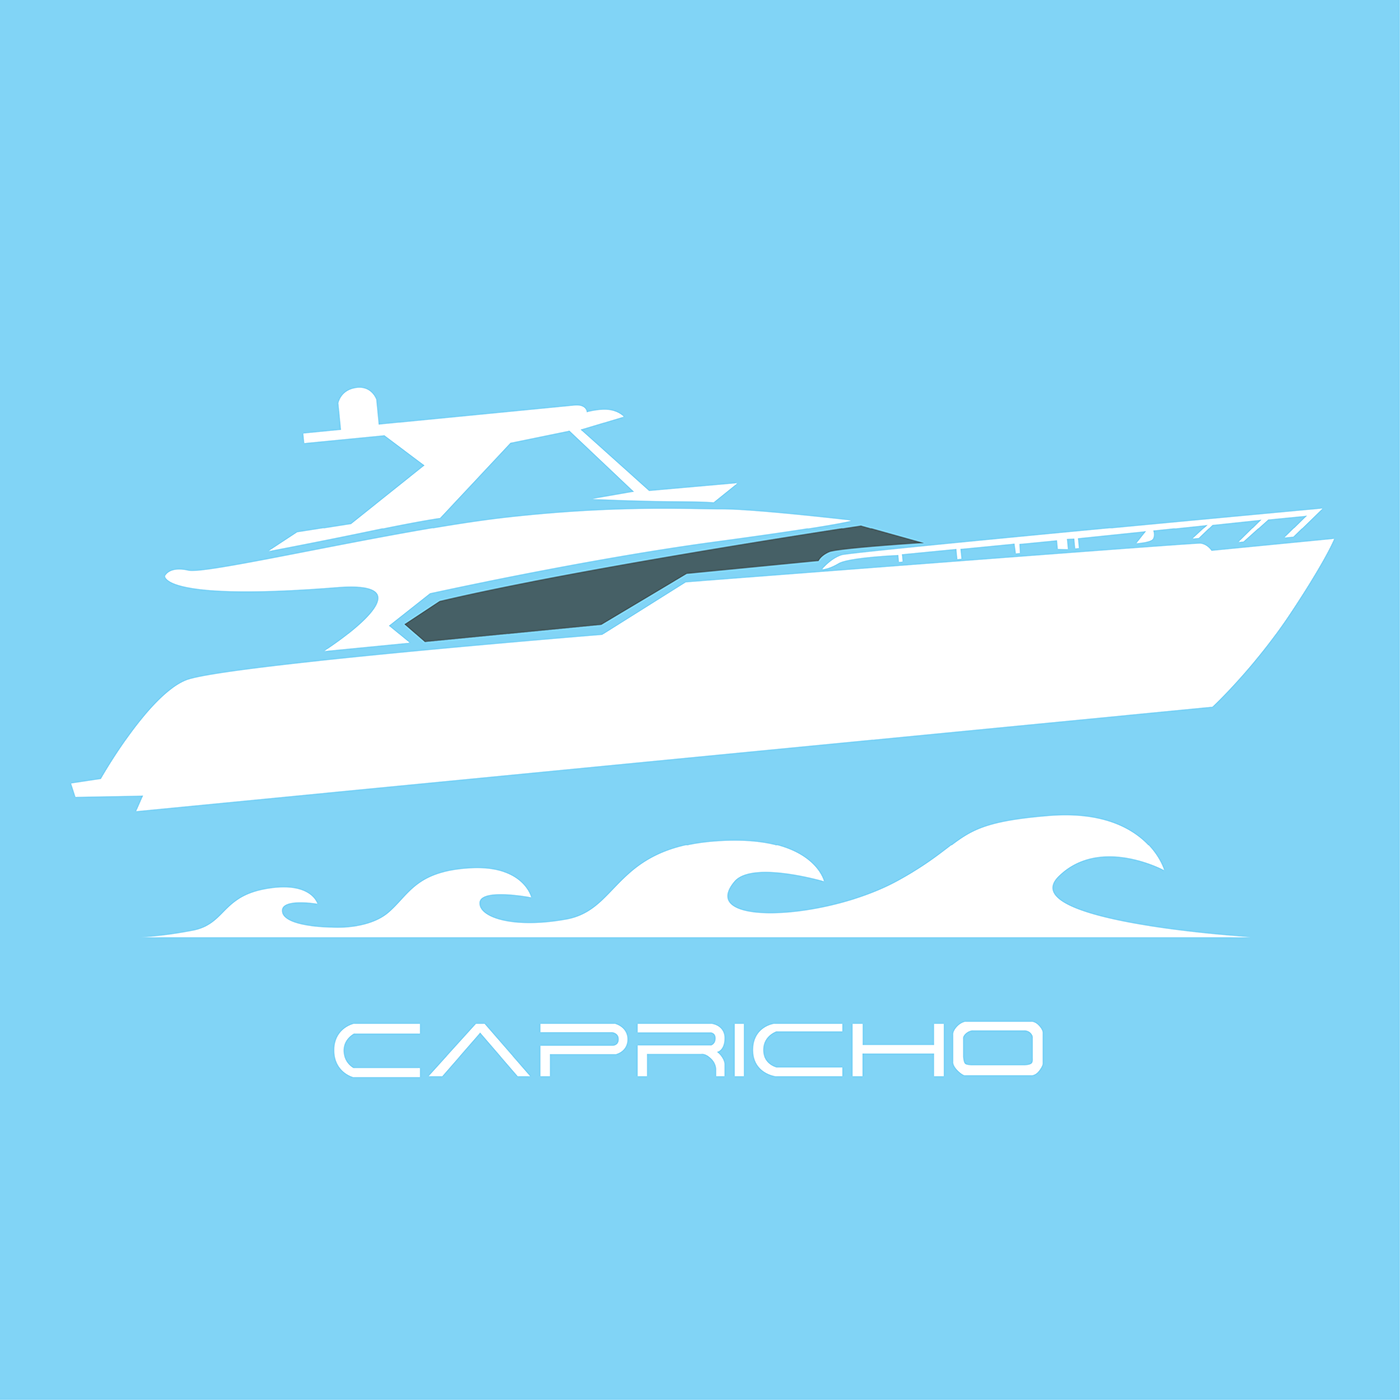 capricho design contest logo